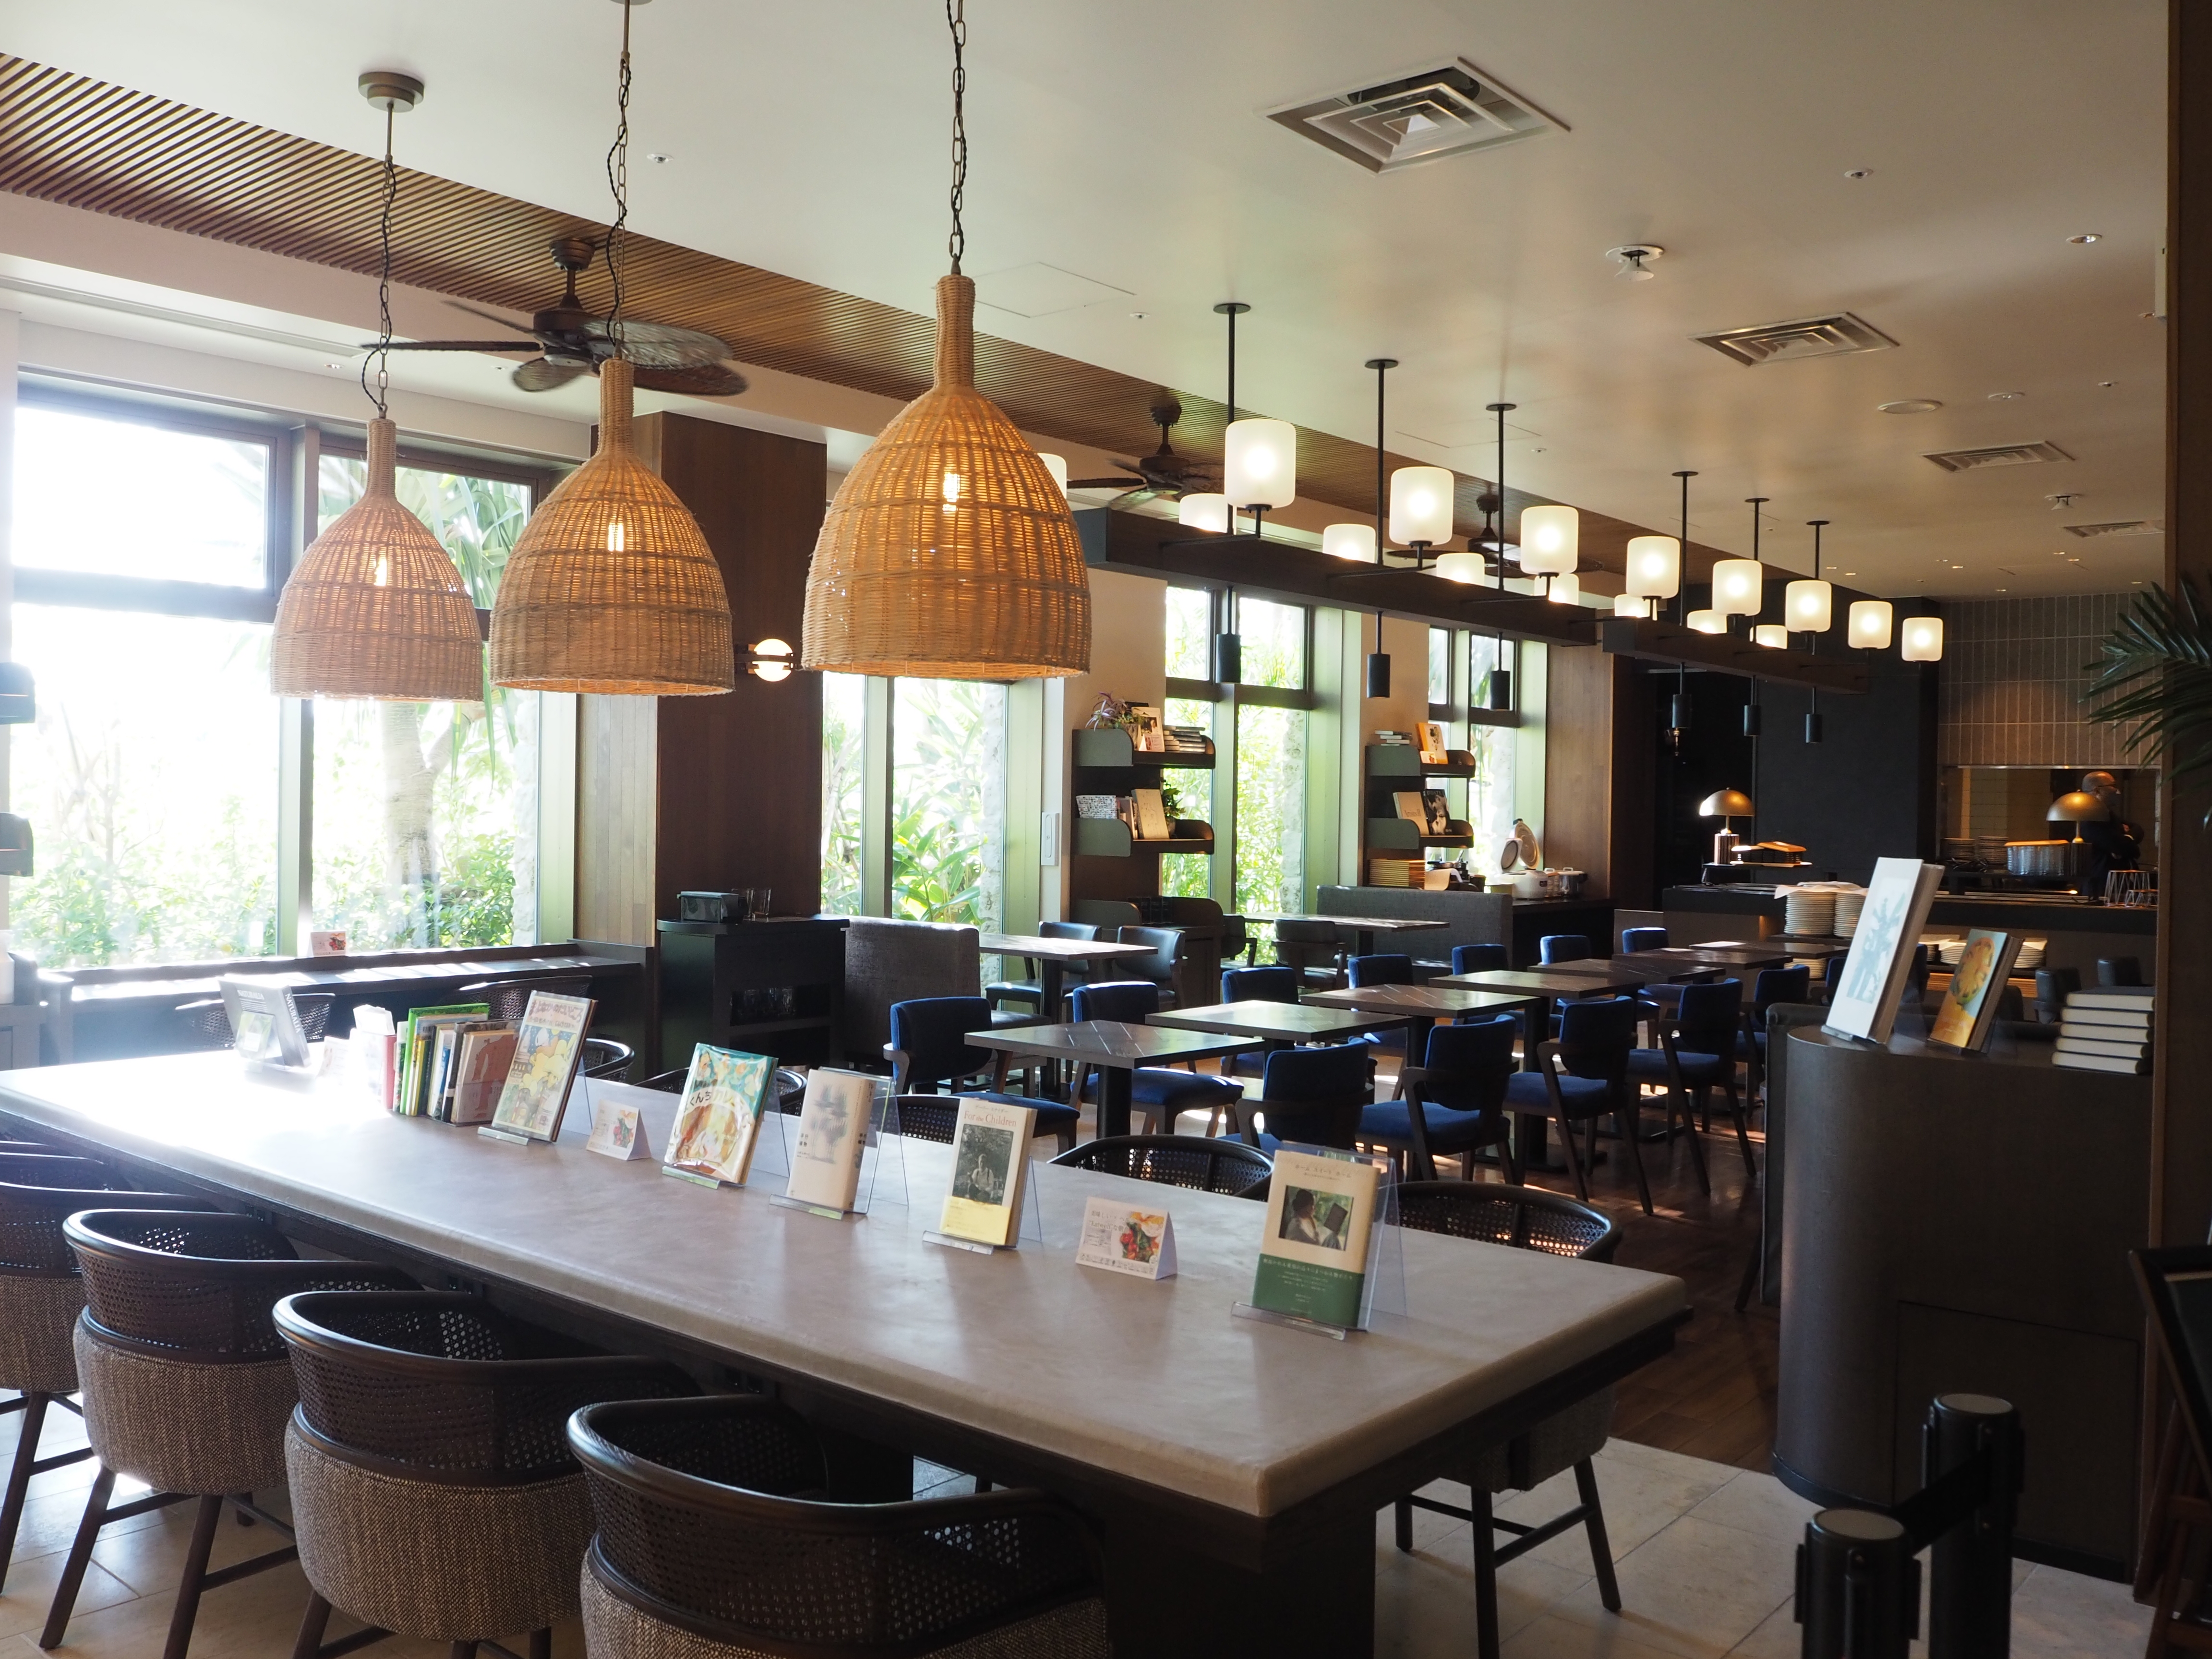 洗練された空間で、沖縄の“旬”を感じる。BLUE BOOKS cafe OKINAWAで過ごす静穏な時間